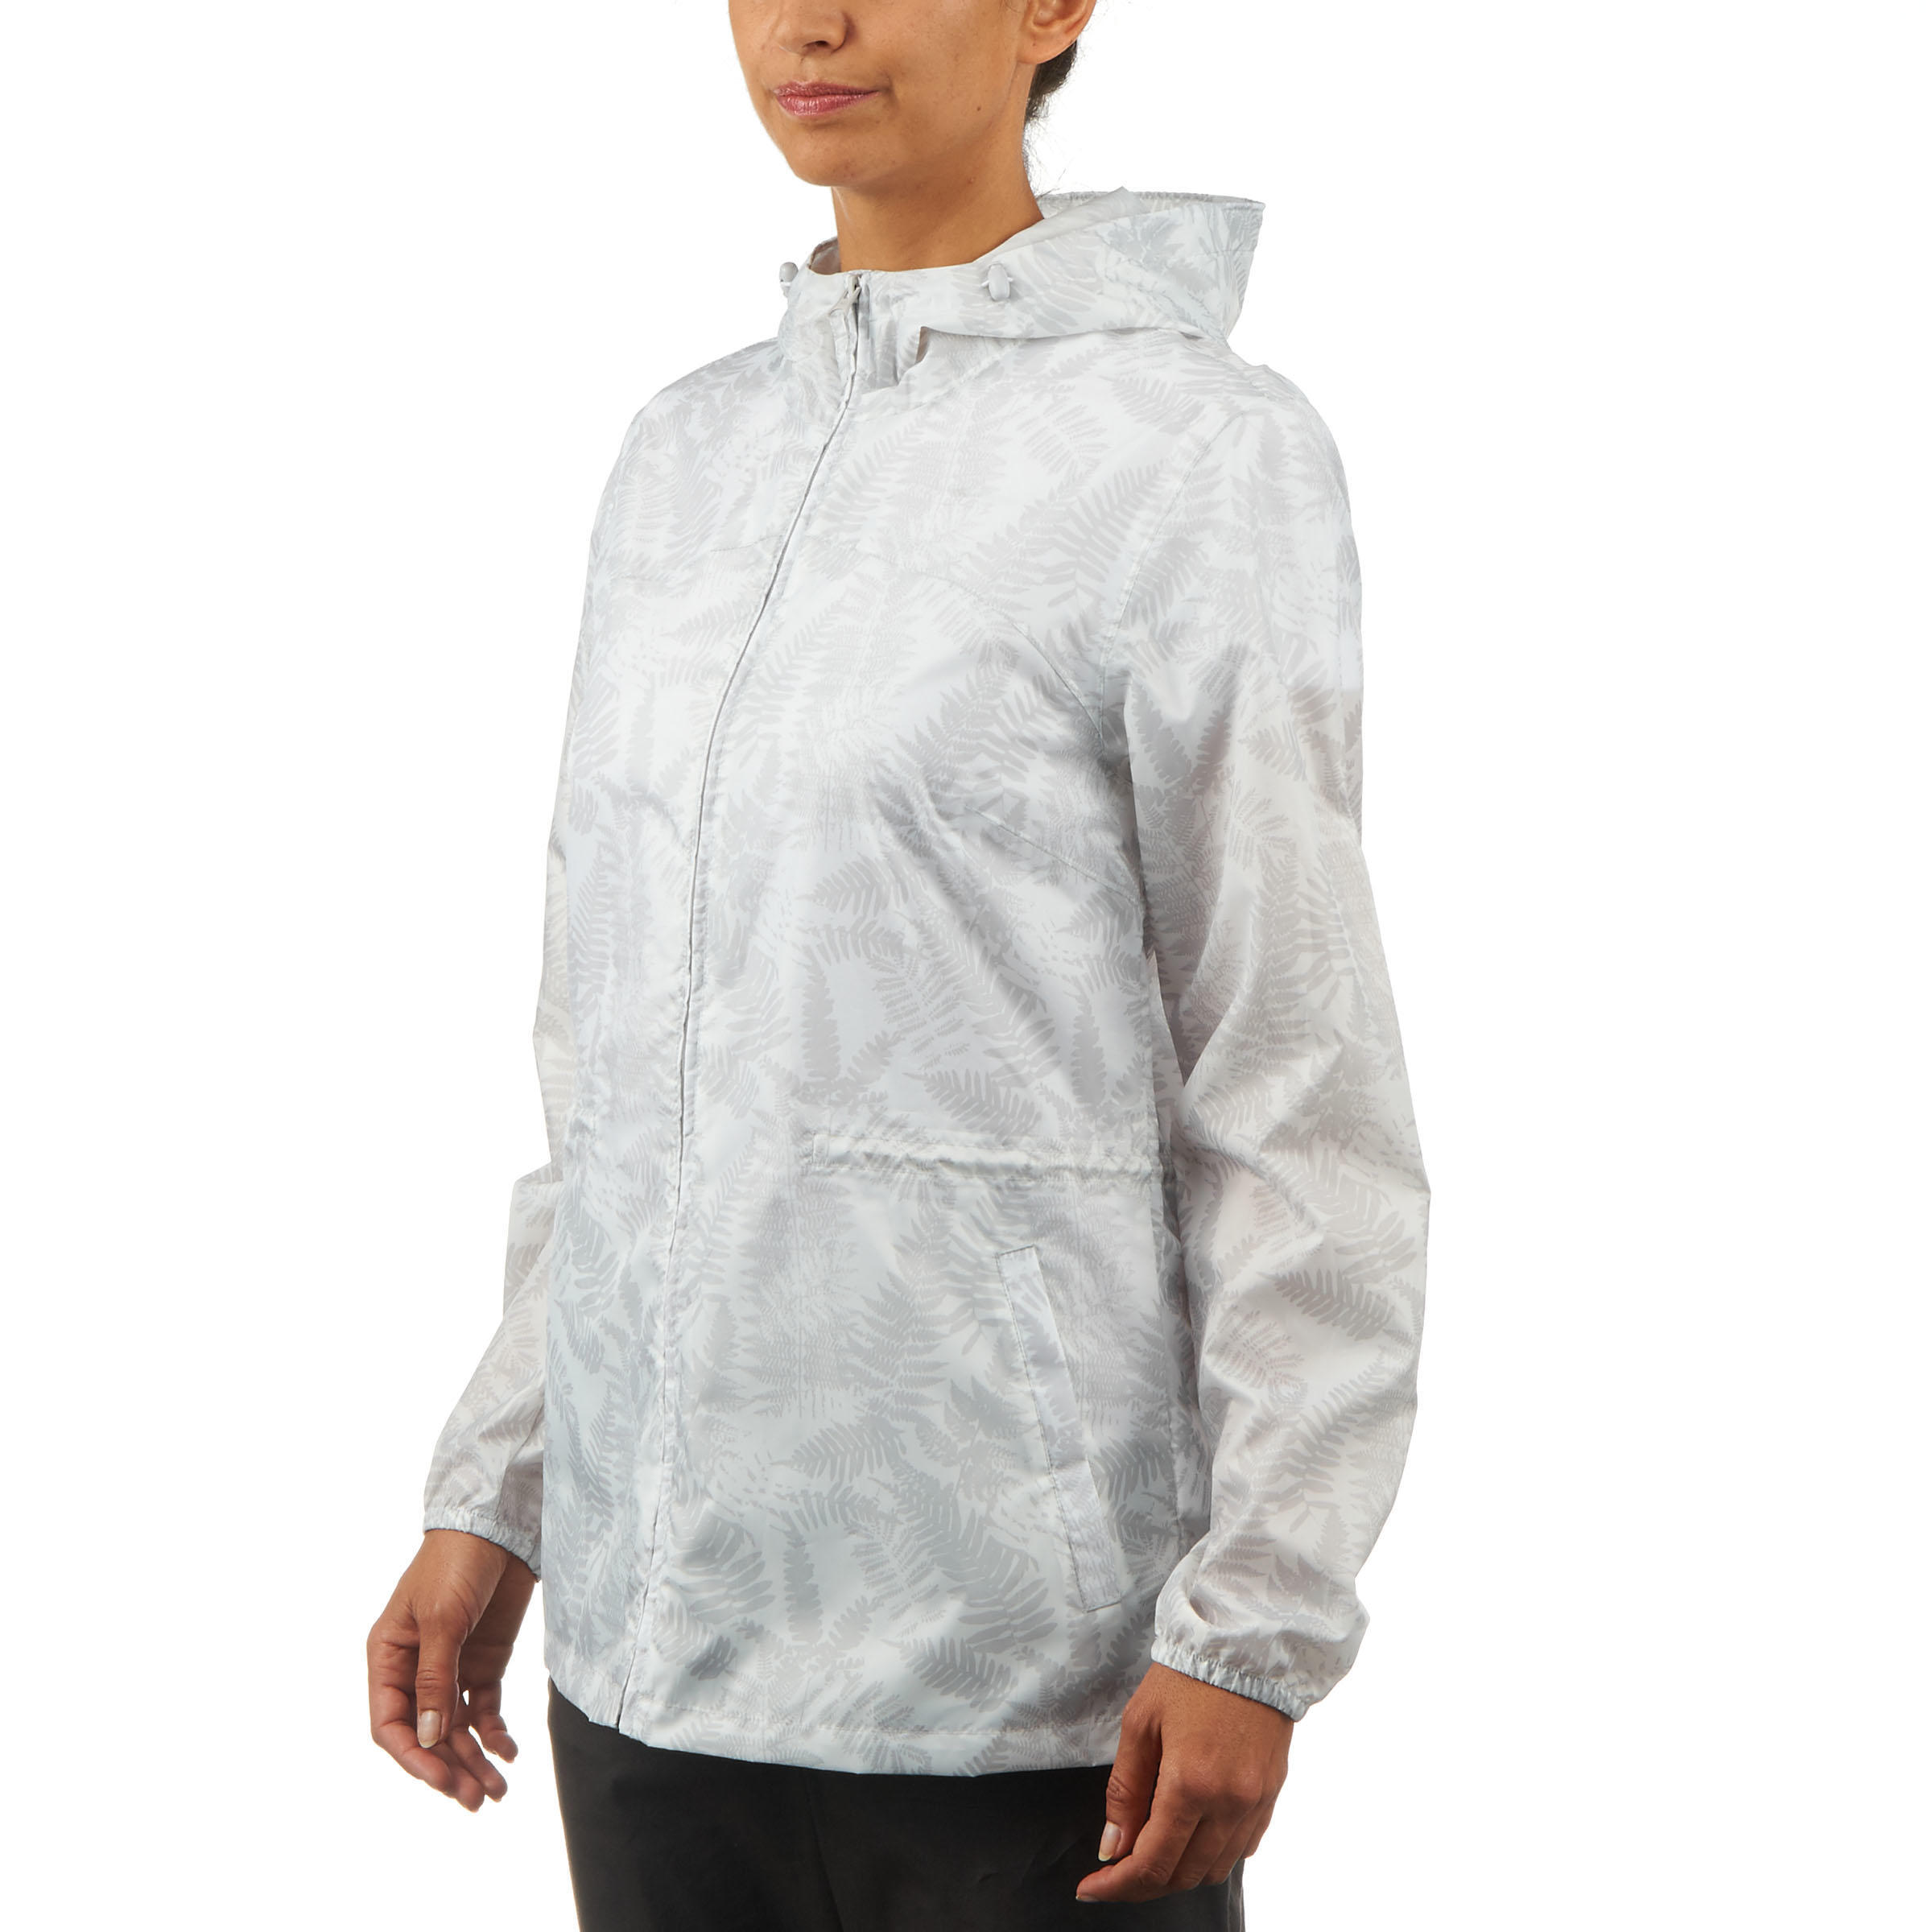 Women's Windproof and Water-repellent Hiking Jacket - Raincut Full Zip 5/12